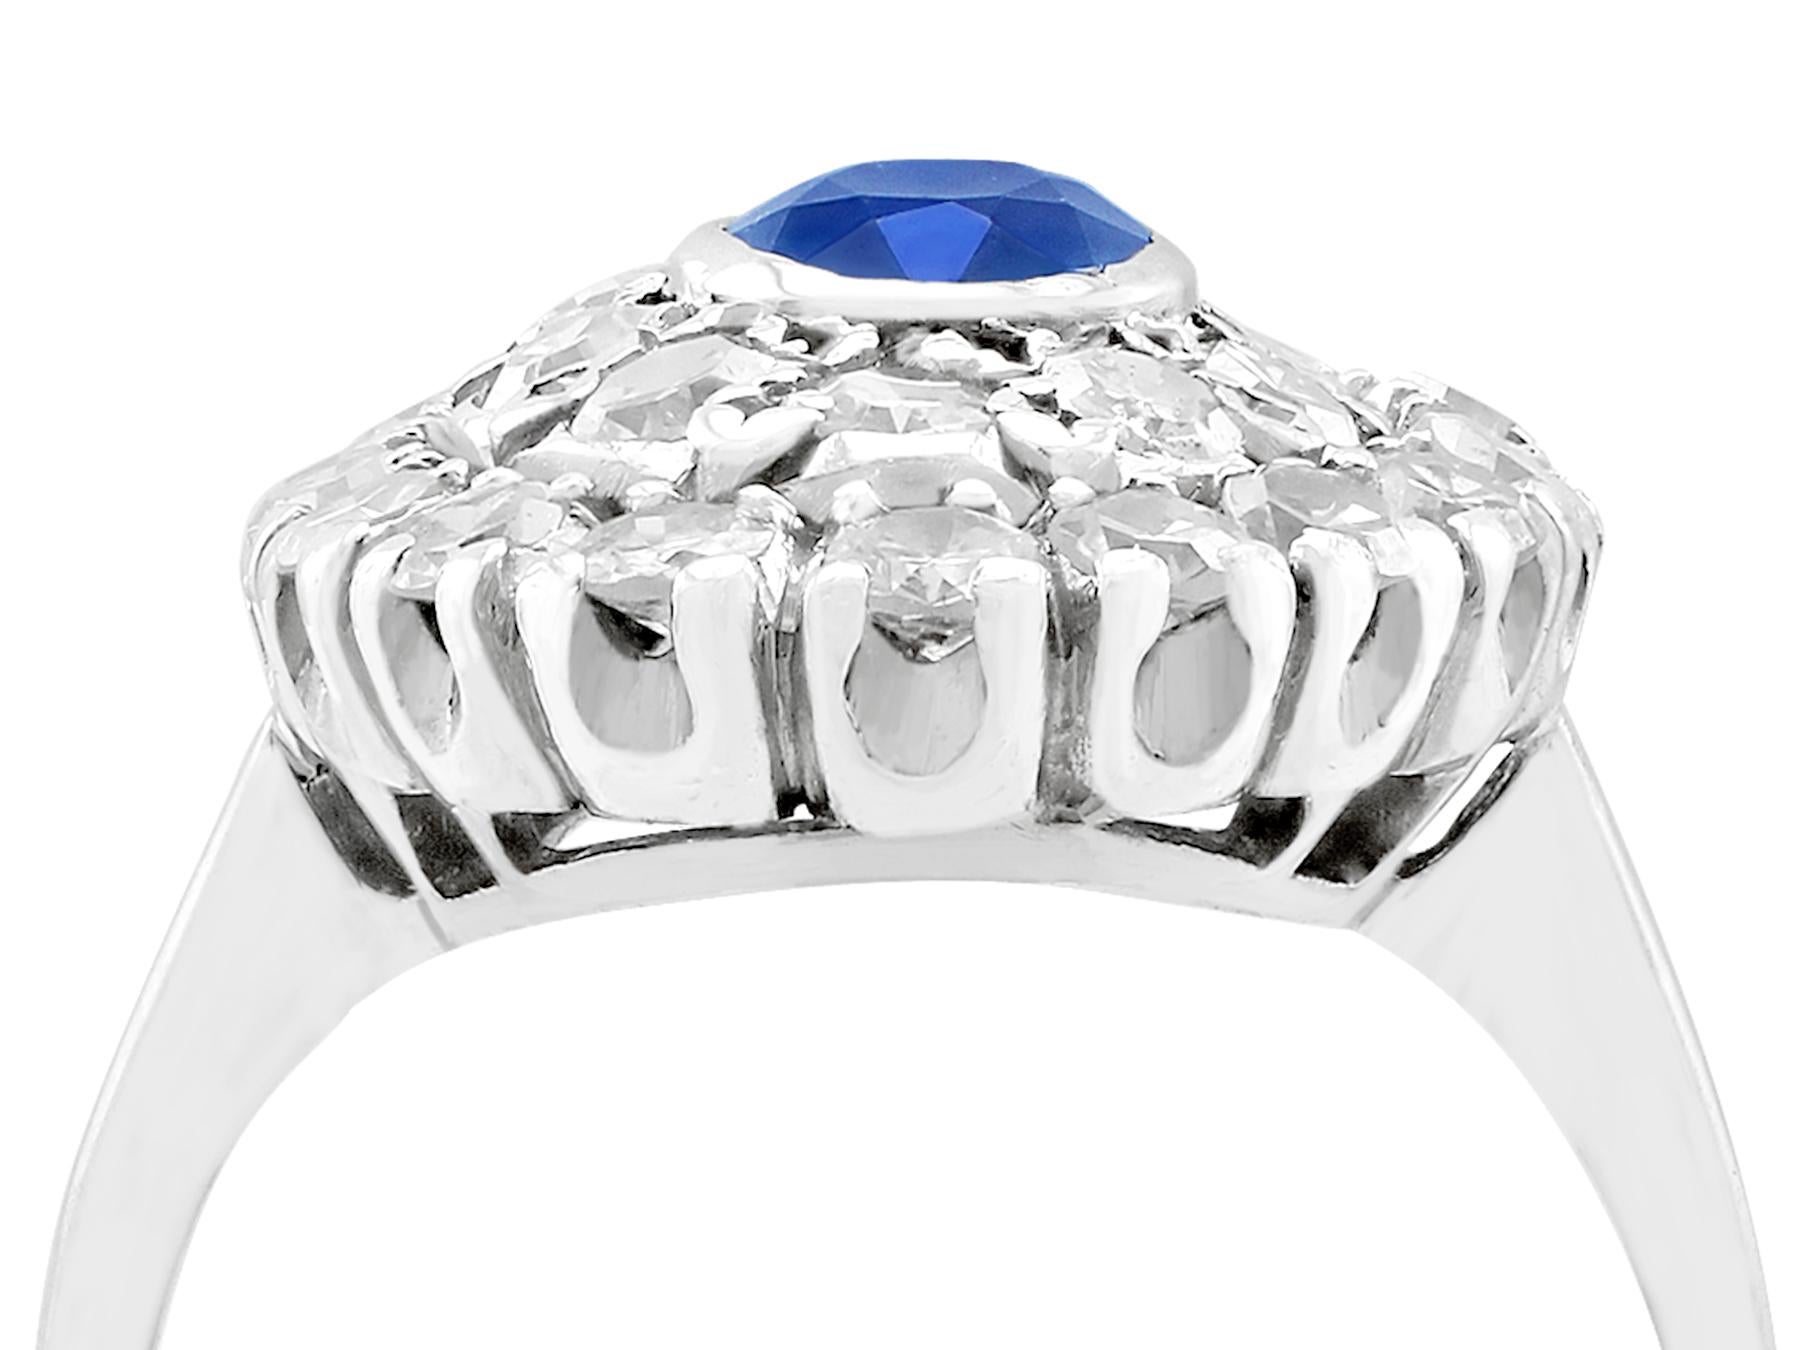 Eine beeindruckende Vintage 0,80 Karat Saphir und 1,88 Karat Diamant, Platin-Cluster-Stil Kleid Ring; Teil unserer vielfältigen Vintage-Schmuck und Estate Jewelry Sammlungen.

Dieser schöne und beeindruckende Vintage-Saphirring ist aus Platin